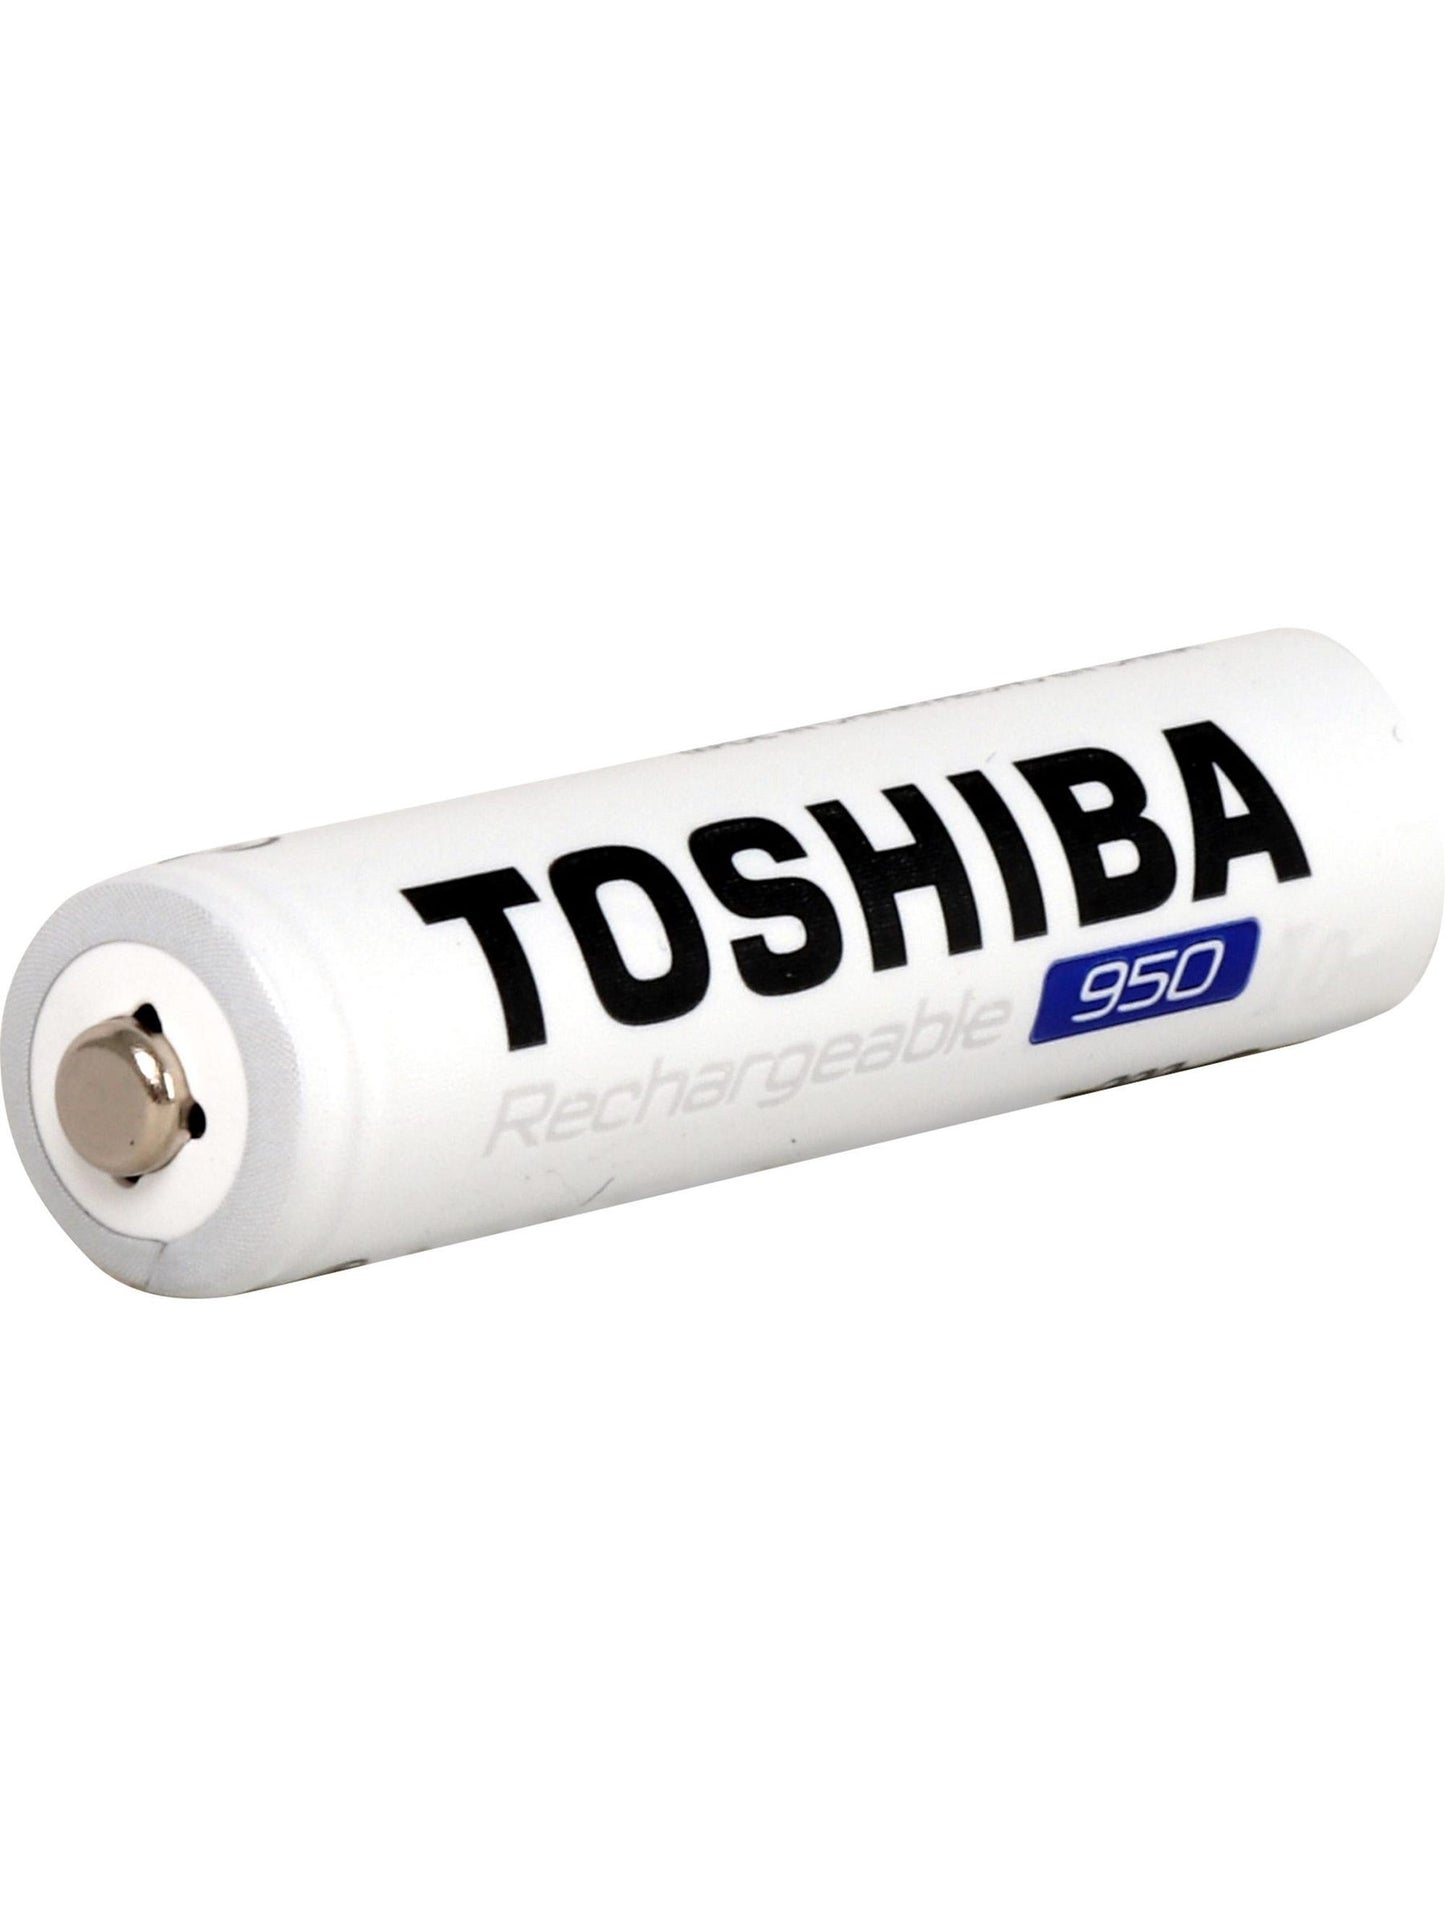 Pilas recargables AAA 1.2V x 4 unidades. Toshiba